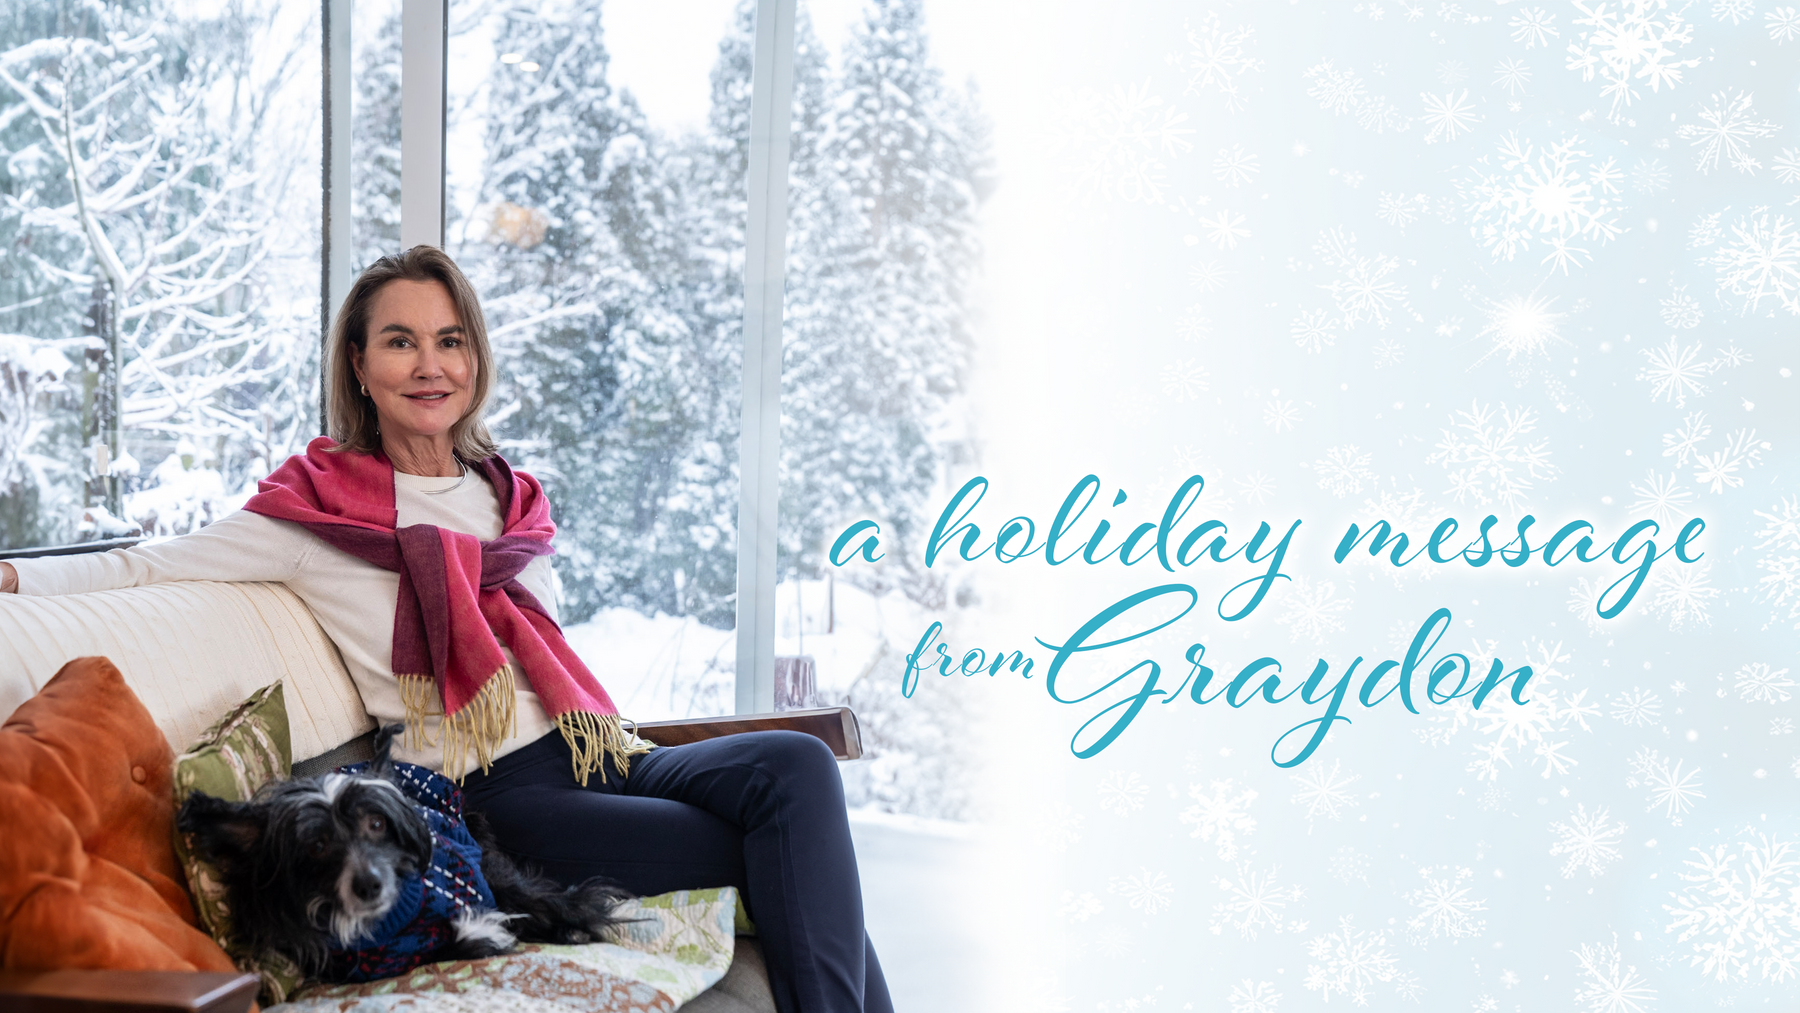 Graydon’s Holiday Message